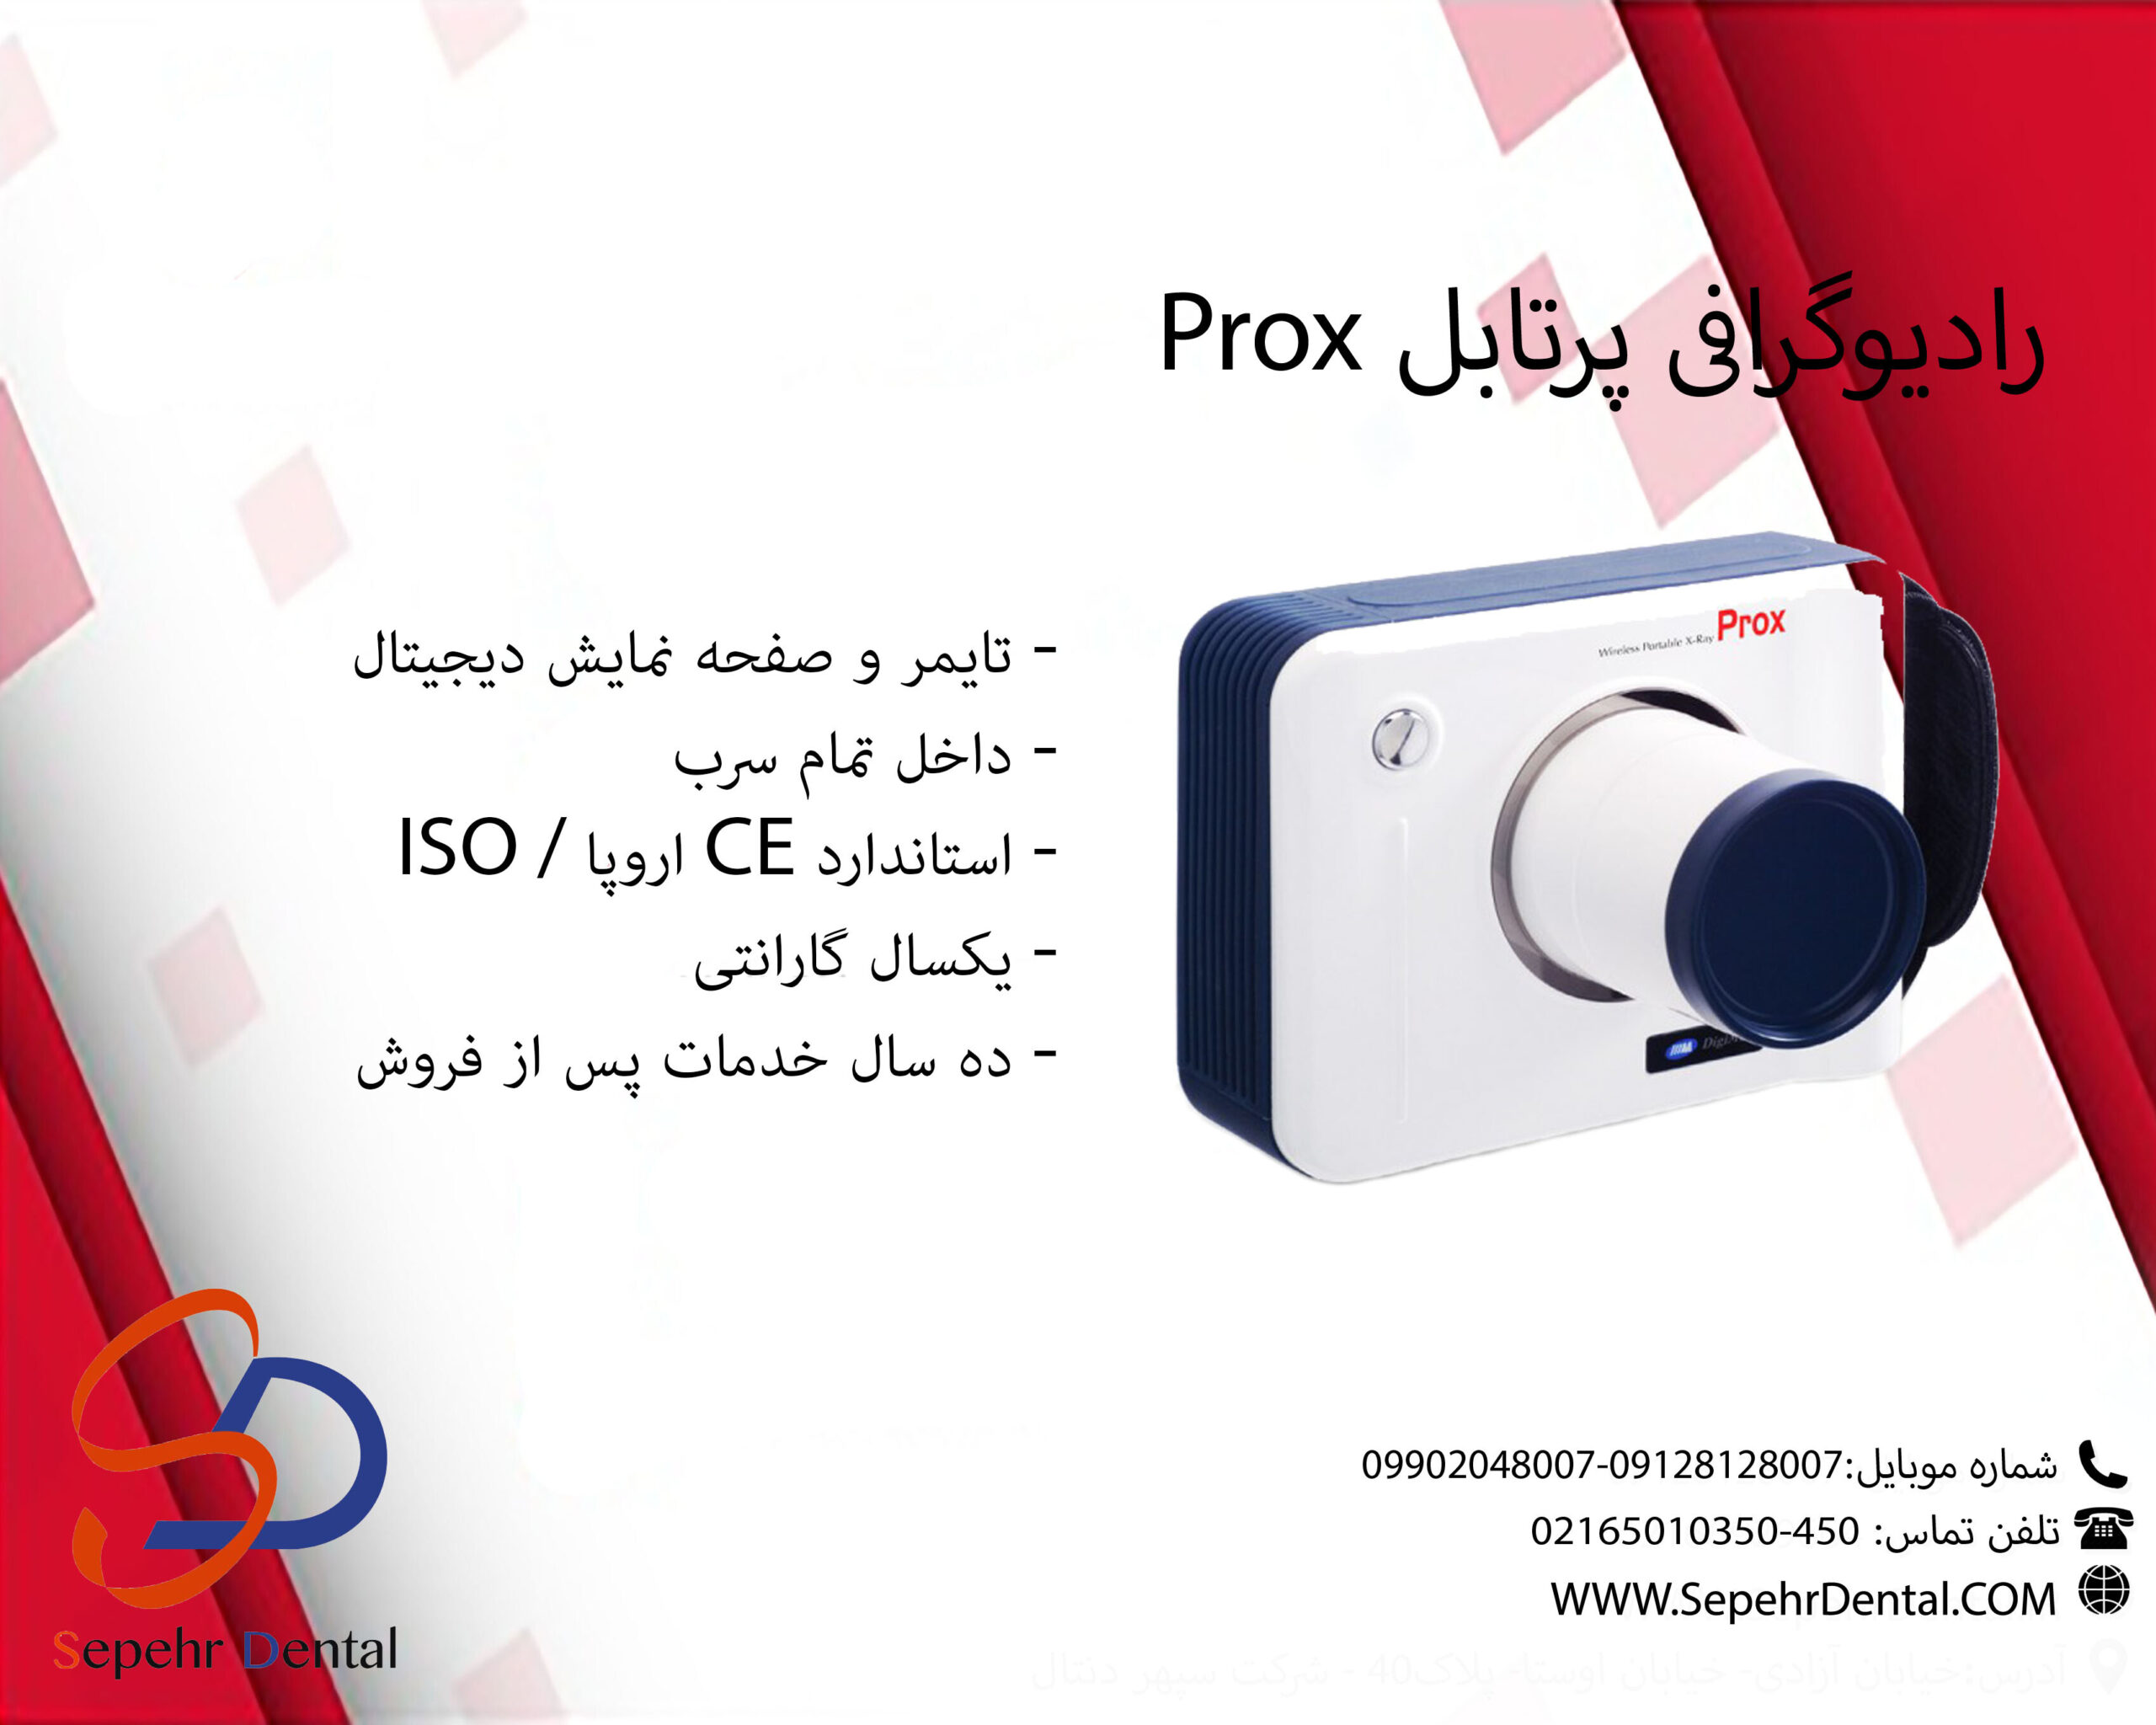 رادیوگرافی پرتابل Prox